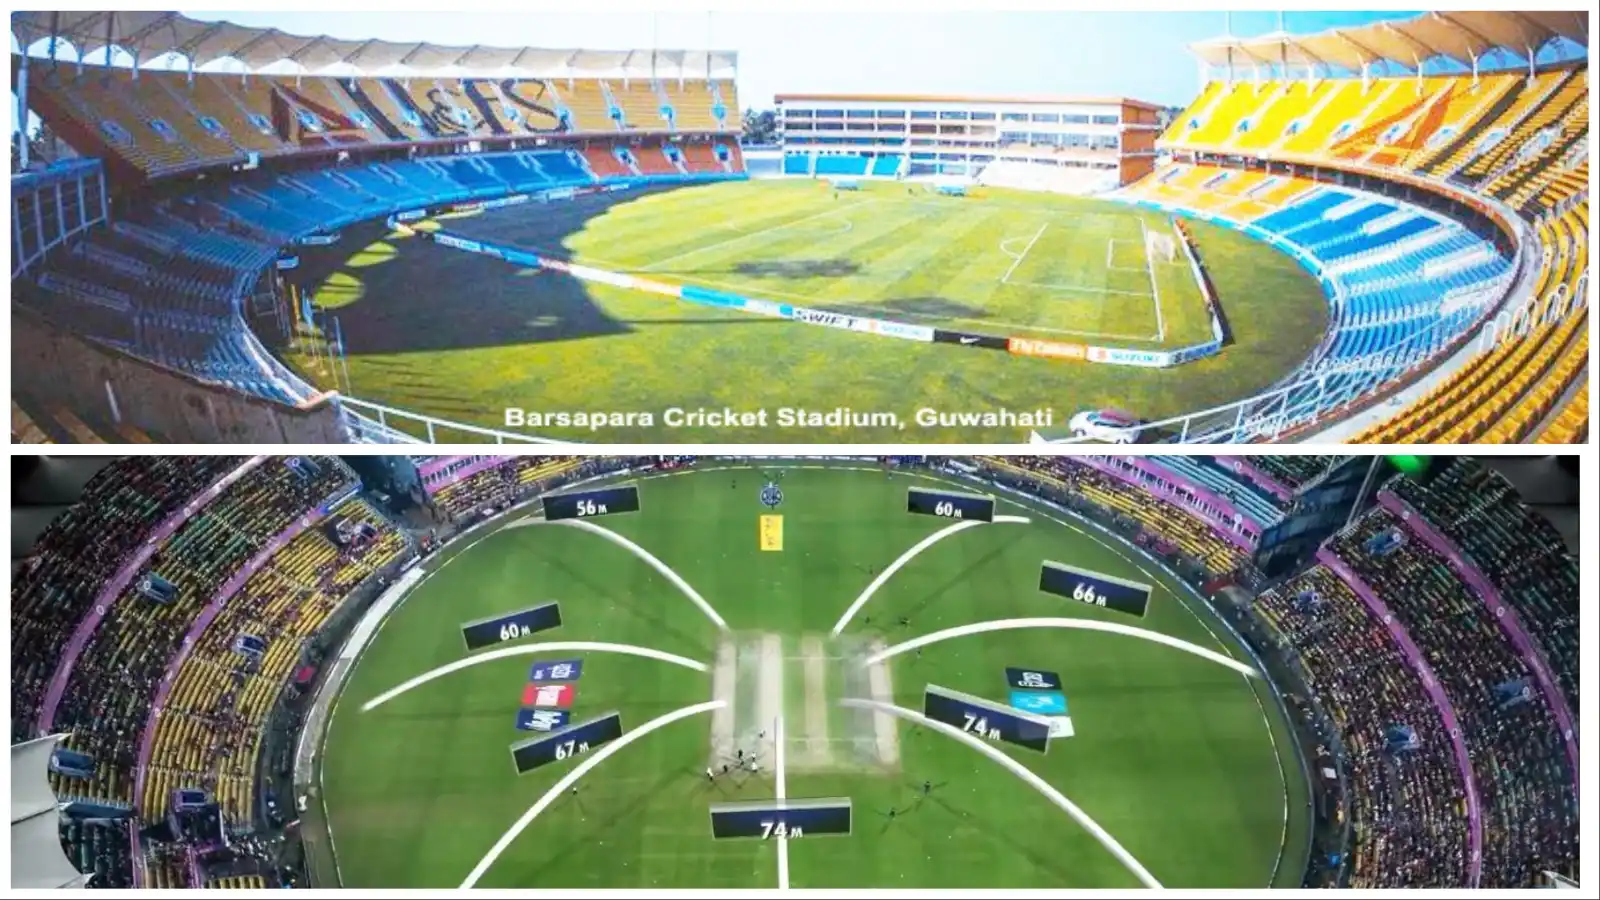 Barsapara Cricket Stadium Boundary Length And Seating Capacity